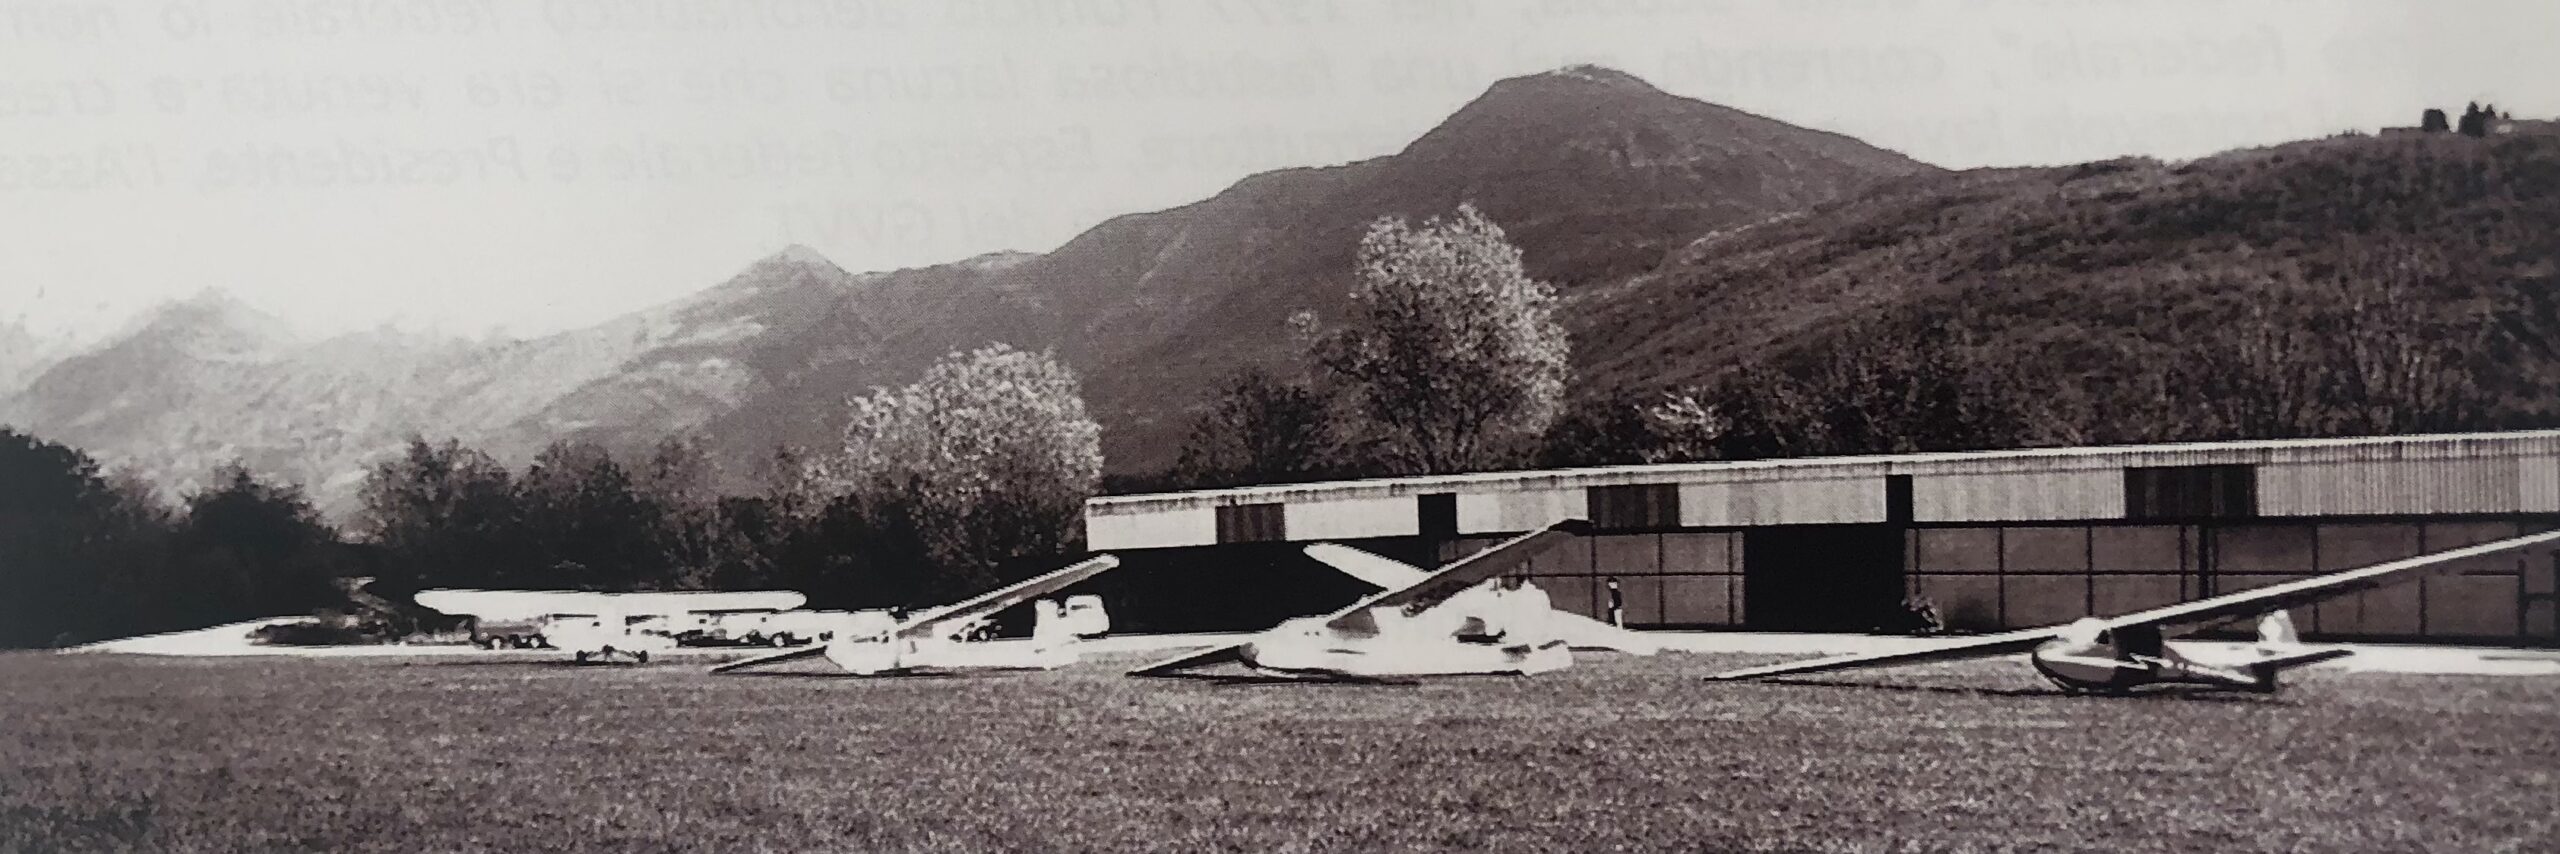 Parco macchine davanti alla nuova aviorimessa nel 1975